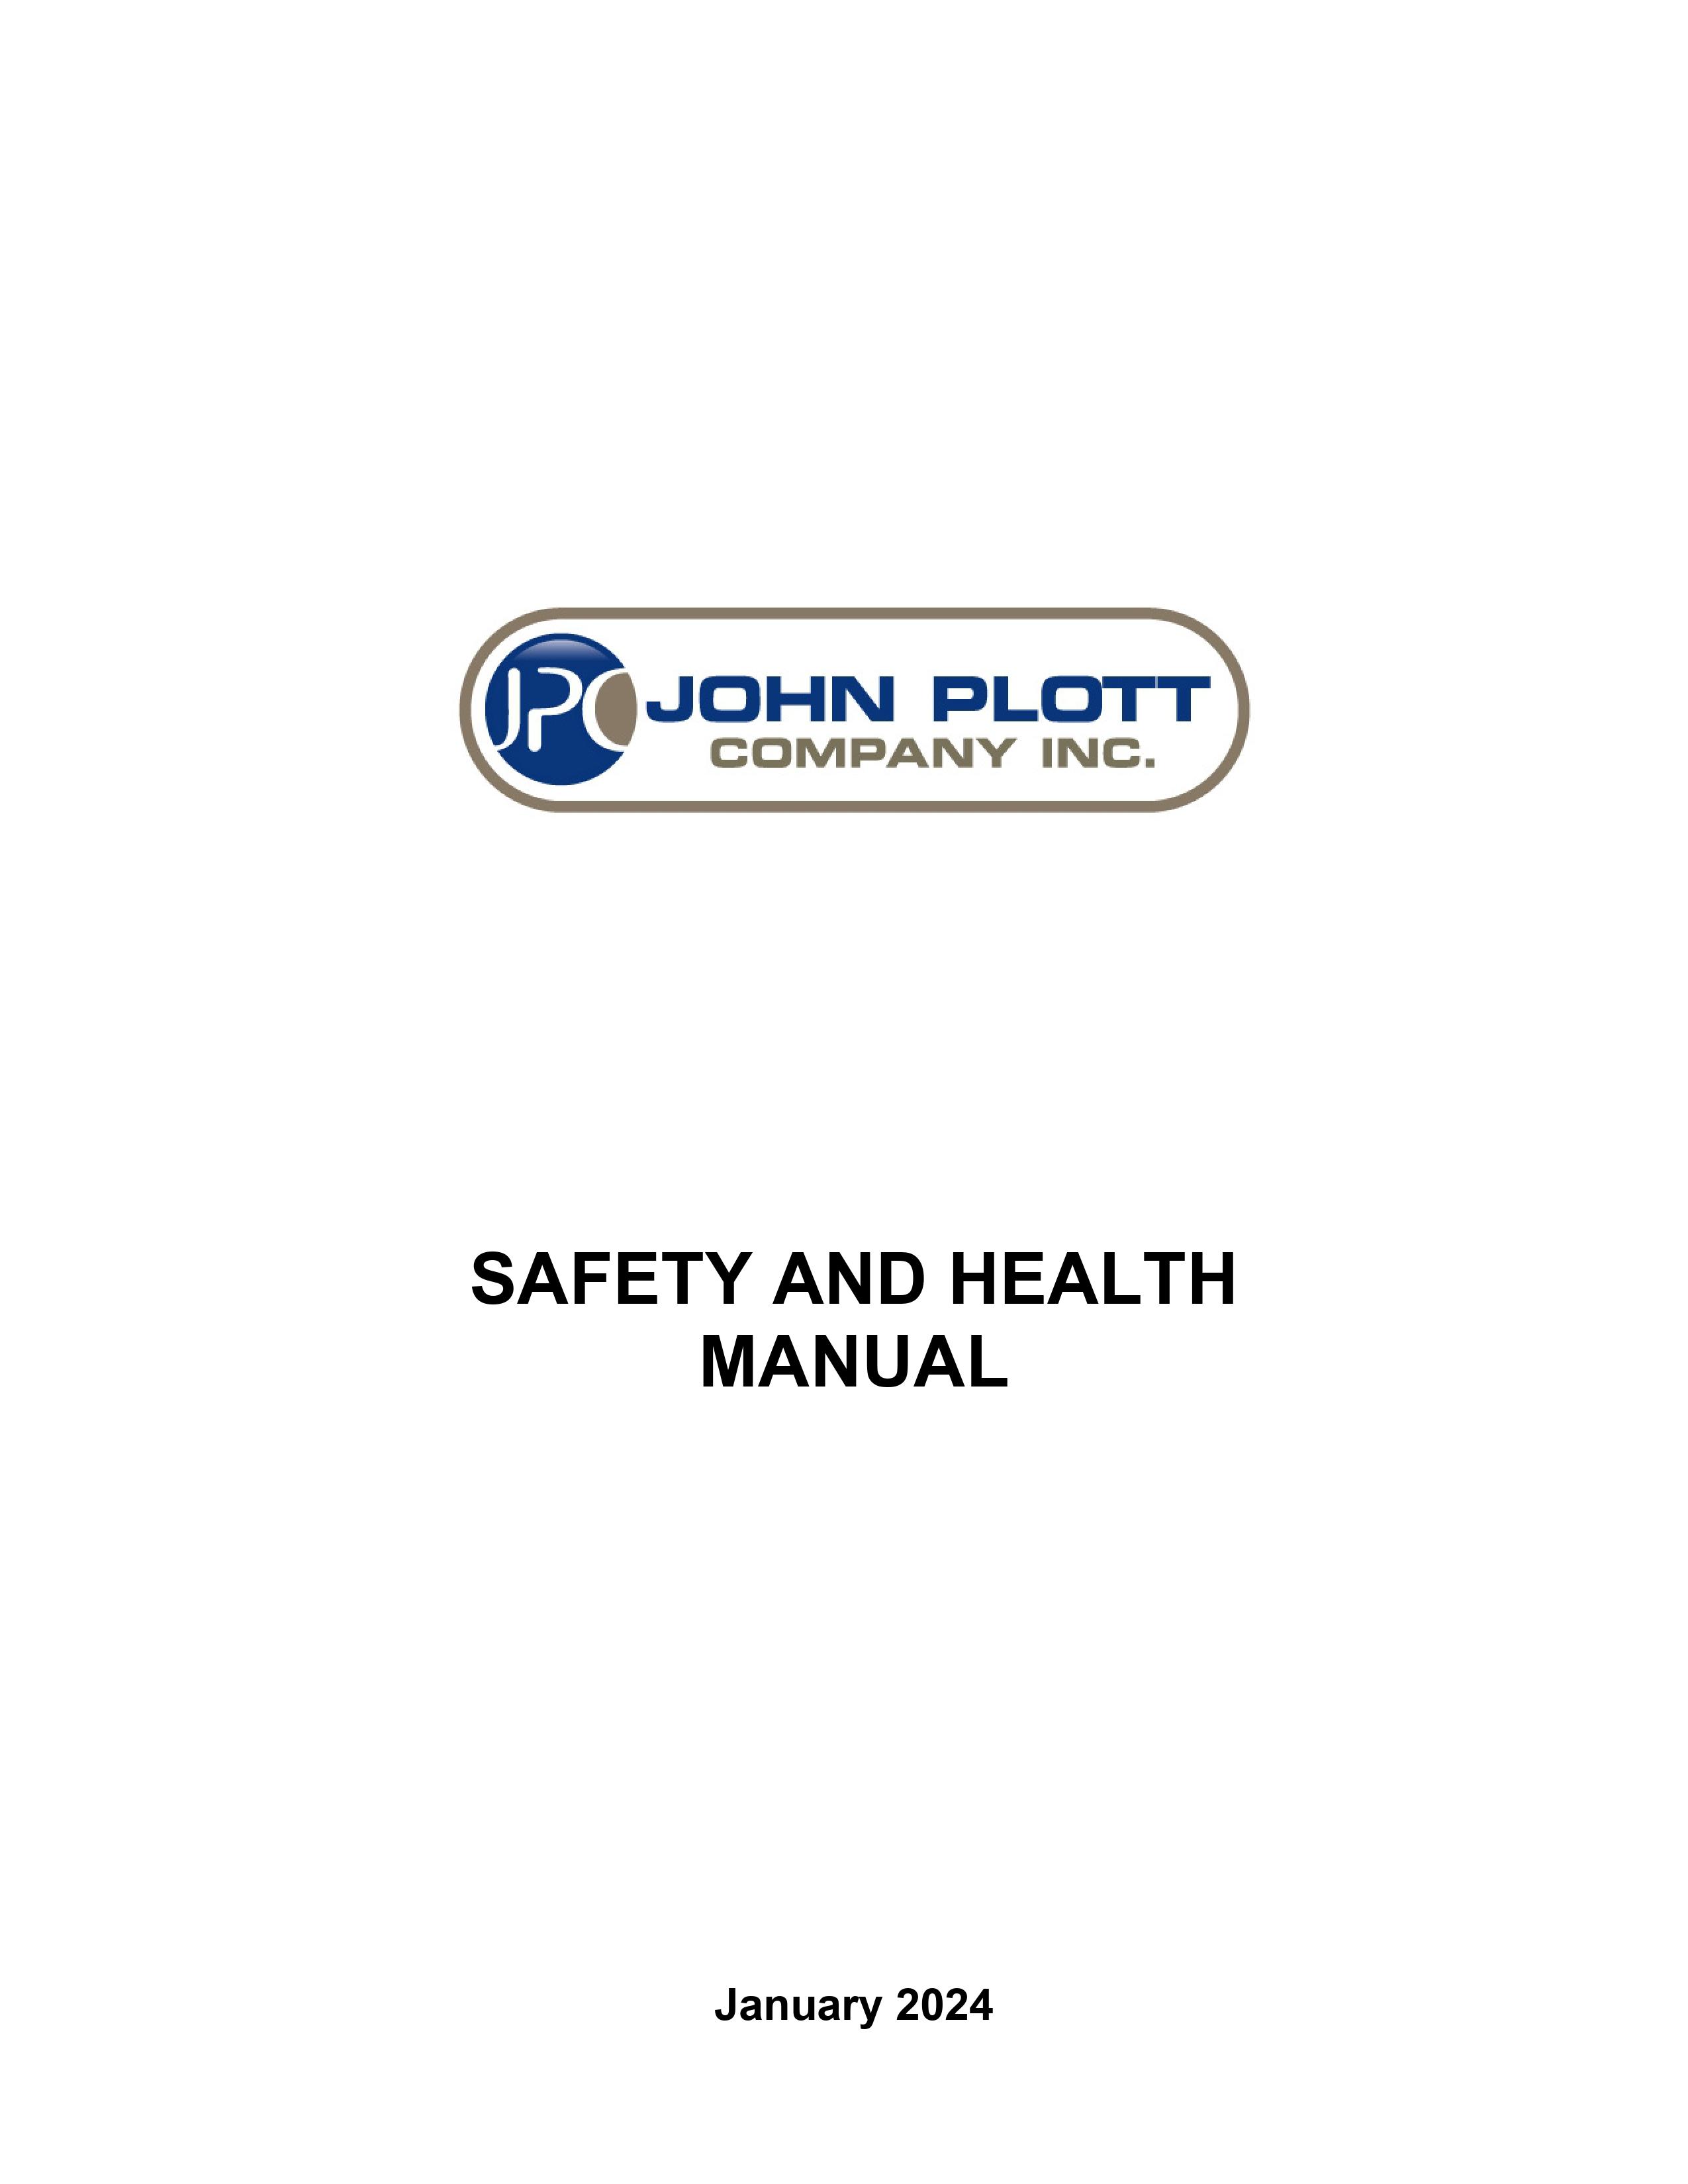 John Plott Health and Safety manual